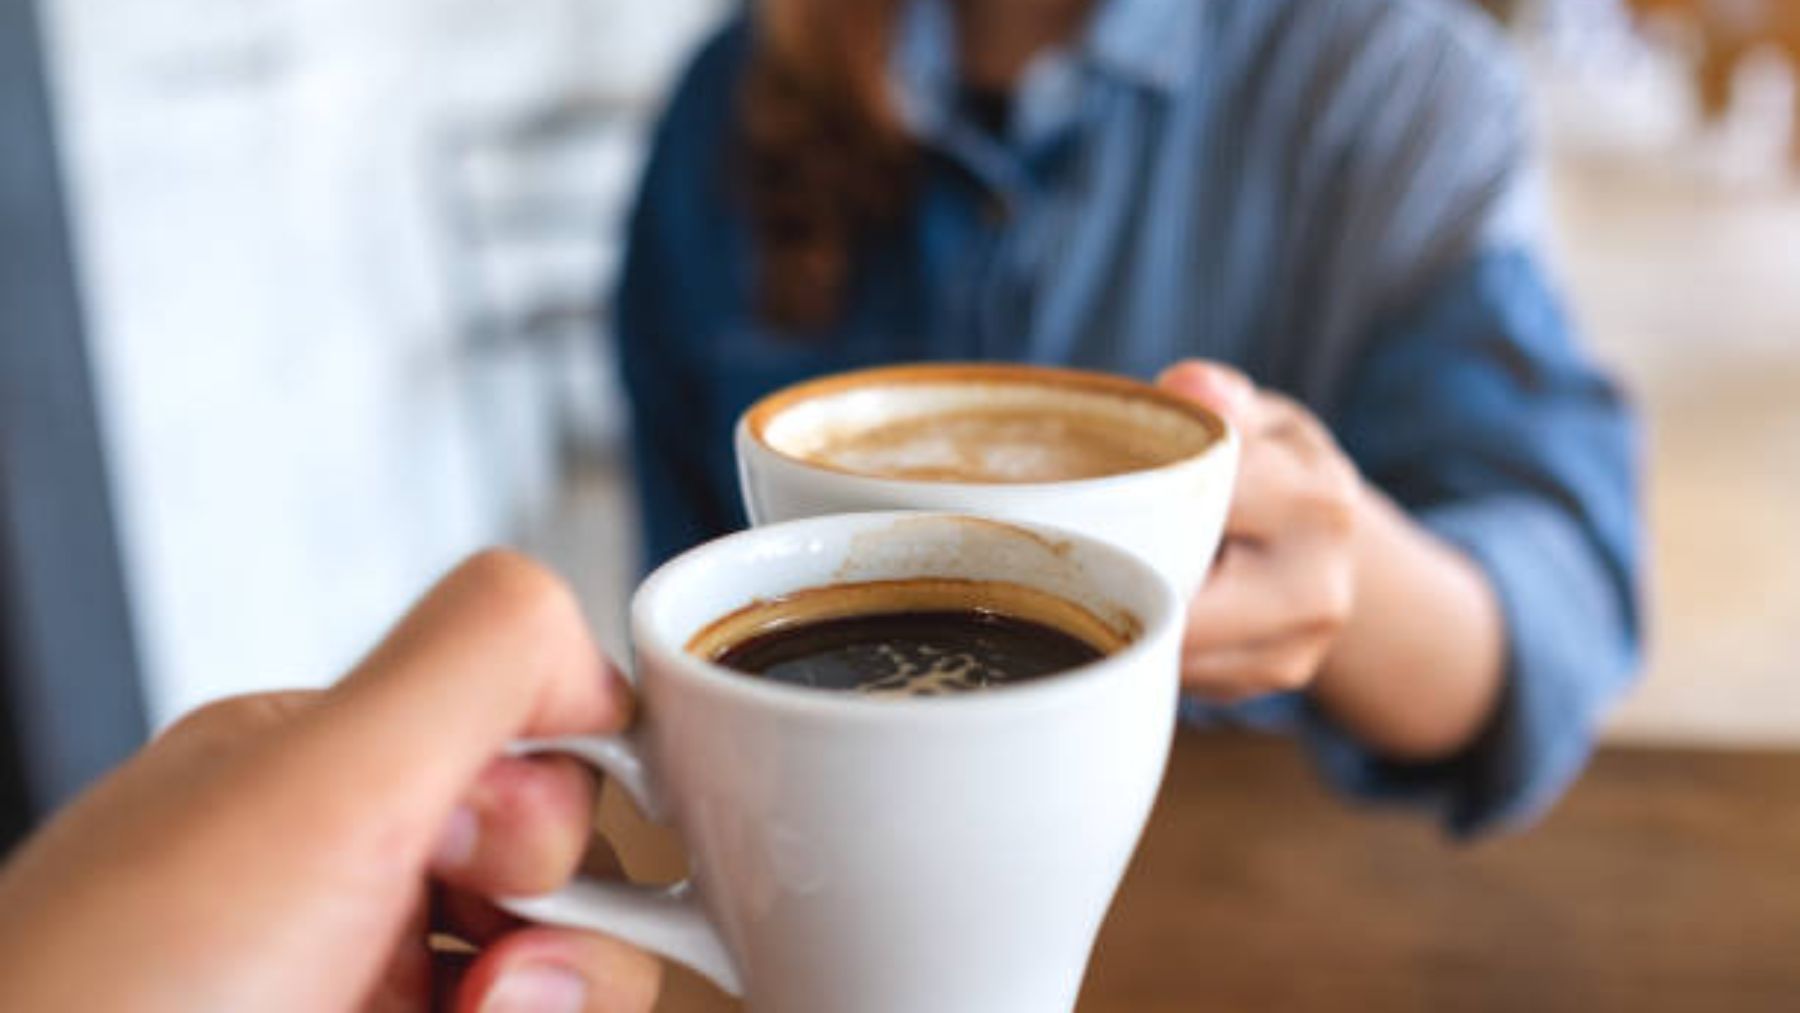 Esto es lo que le pasa a tu cuerpo si tomas café sin azúcar cada mañana. Haz caso a los expertos